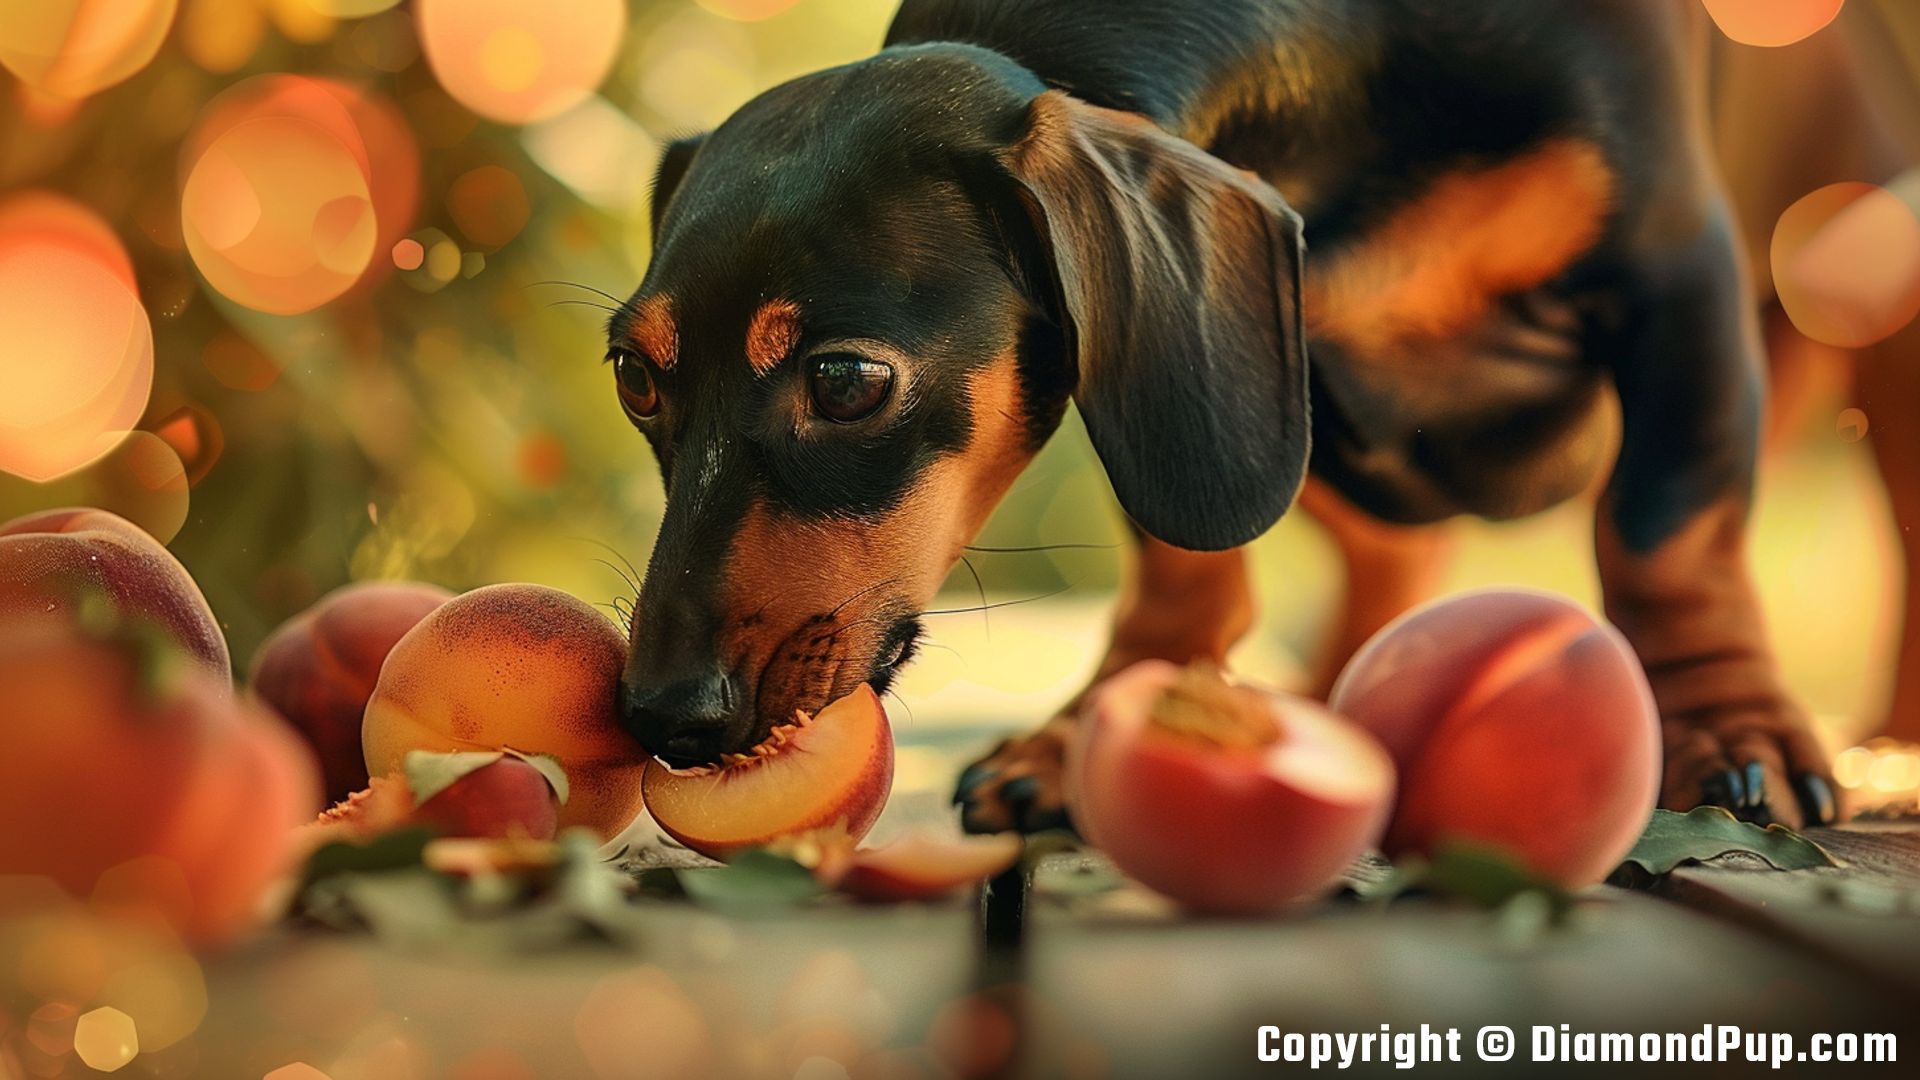 Photo of a Cute Dachshund Eating Peaches